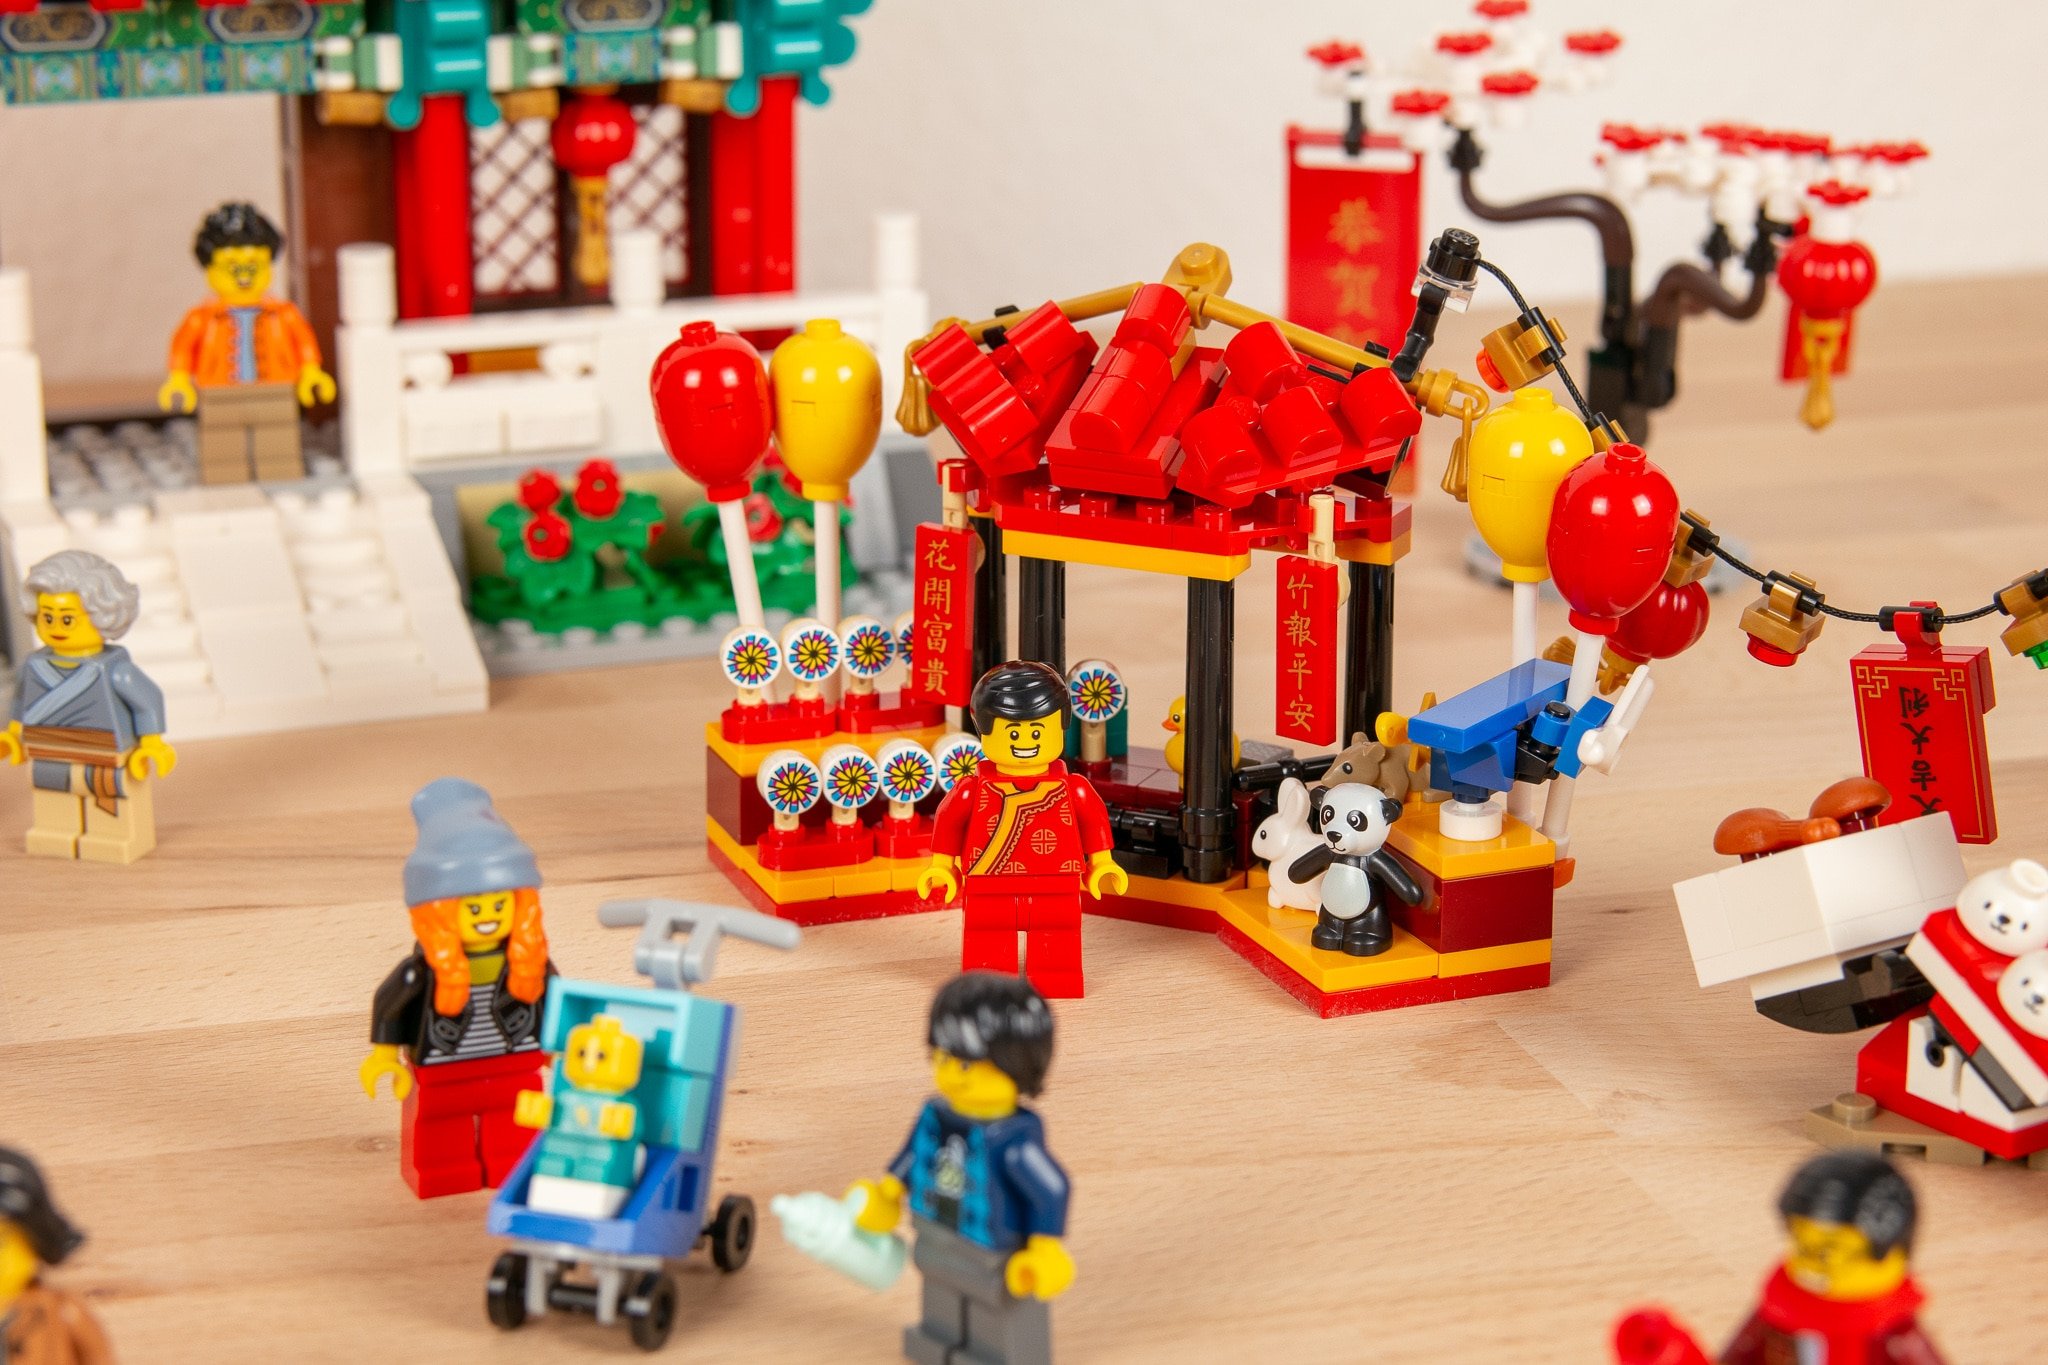 LEGO 80105 Tempelmarkt Zum Chinesischen Neujahrsfest Review (37)